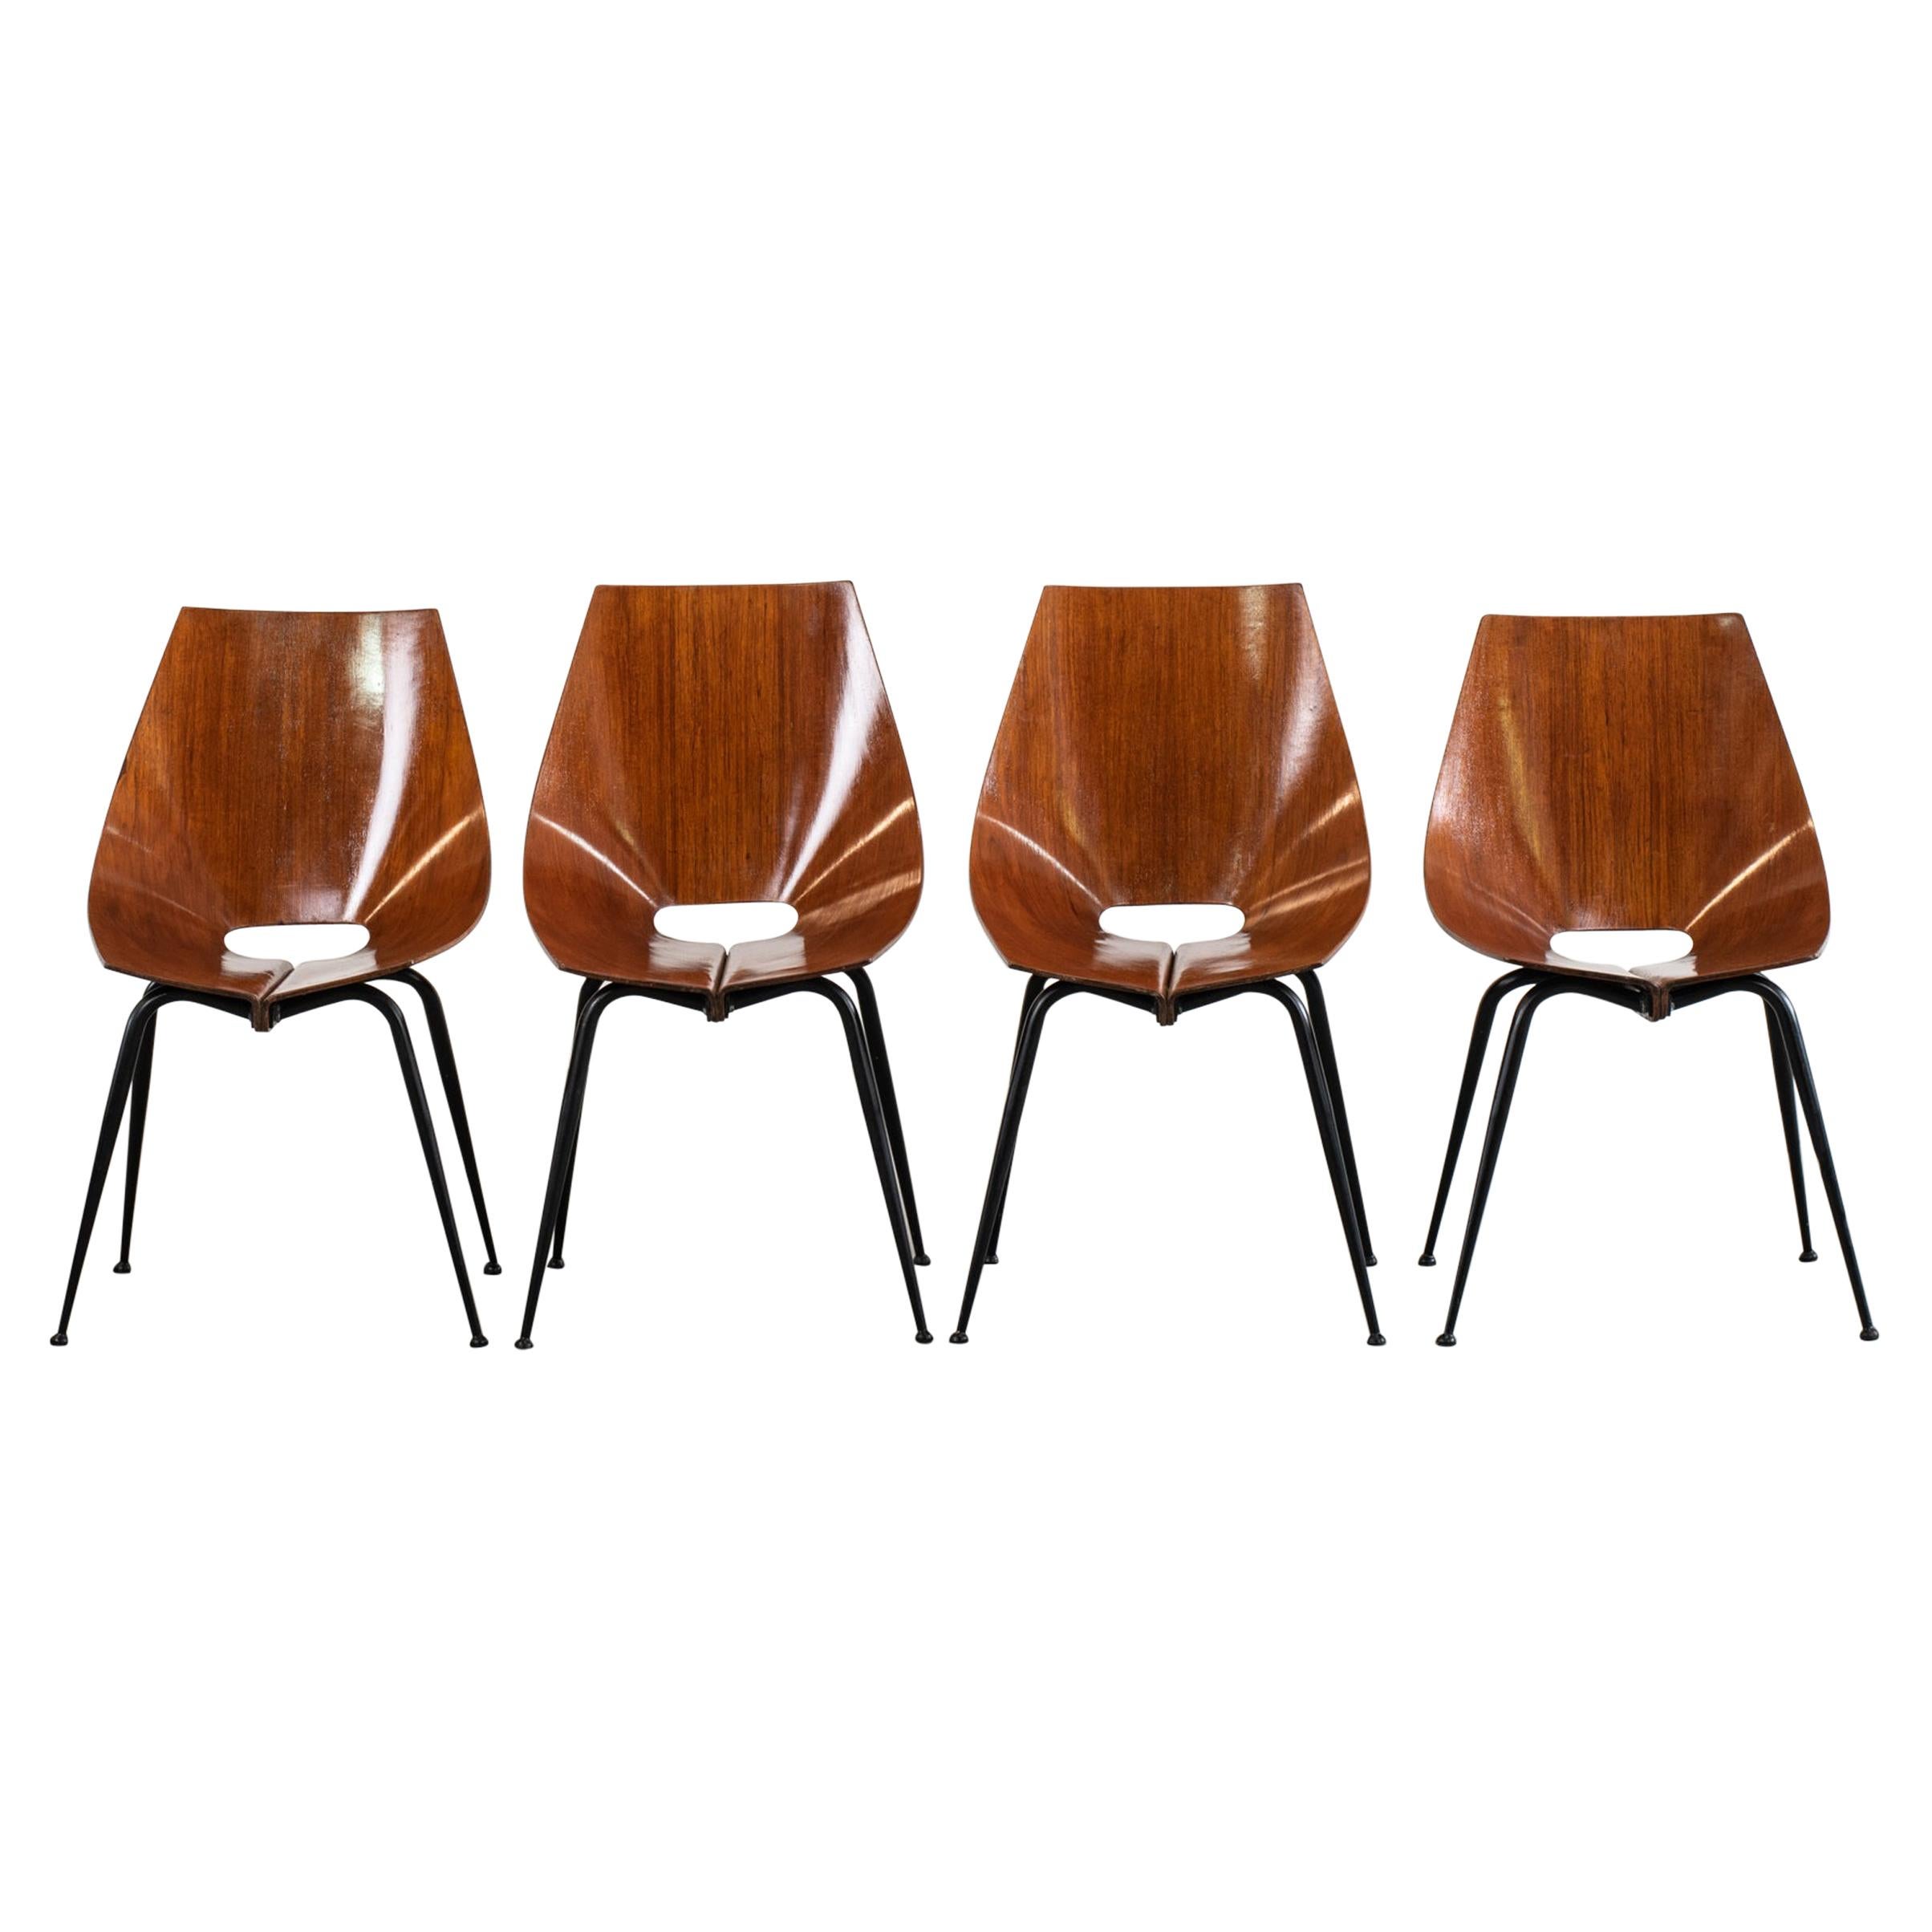 Carlo Ratti Set of Four Chairs in Plywood by Società Compensati Curvi 1950s